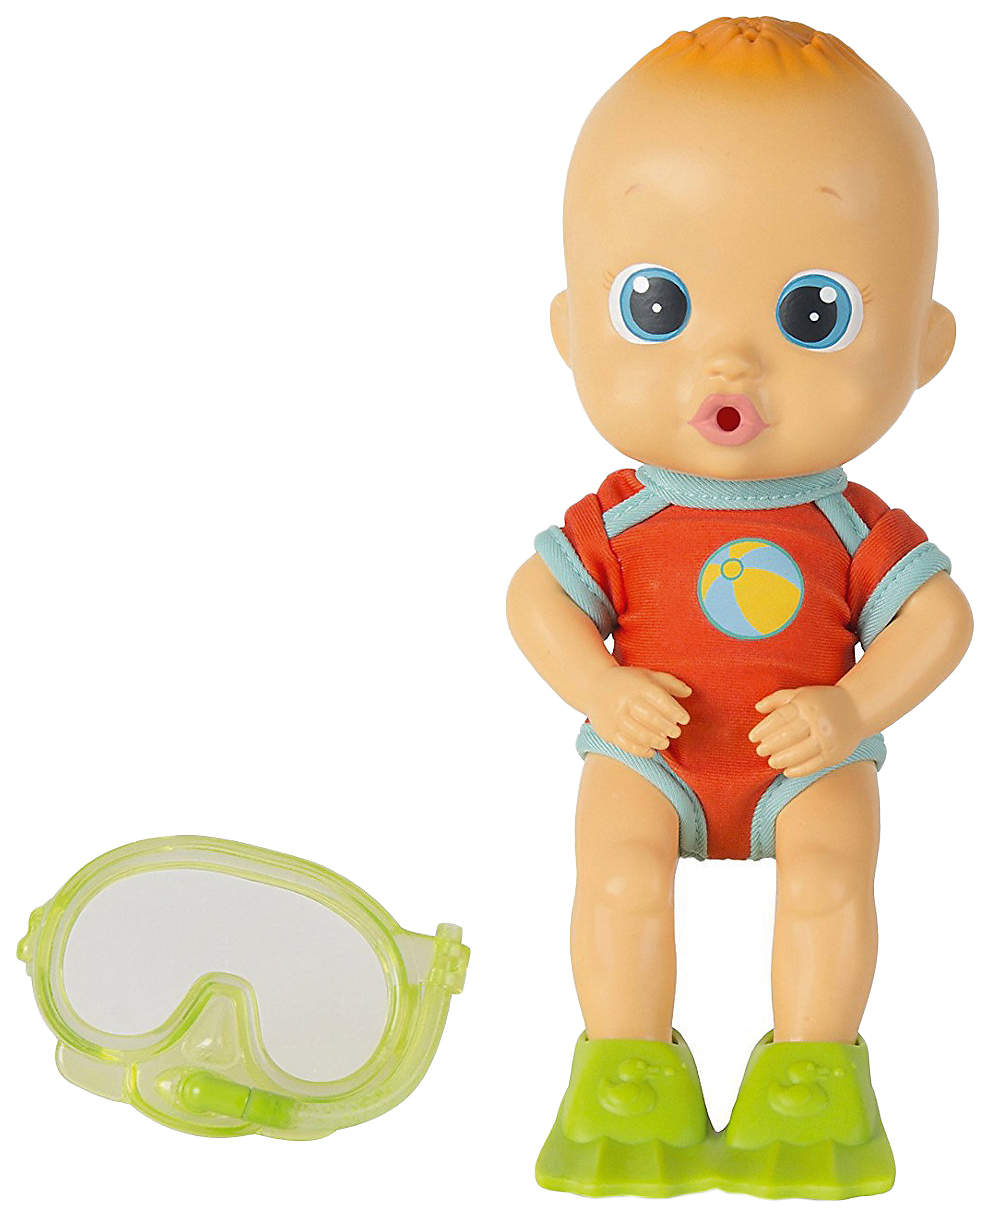 Кукла для купания Bloopies - Коби, в открытой коробке, 24 см IMC toys кукла для купания bloopies коби в открытой коробке 24 см imc toys